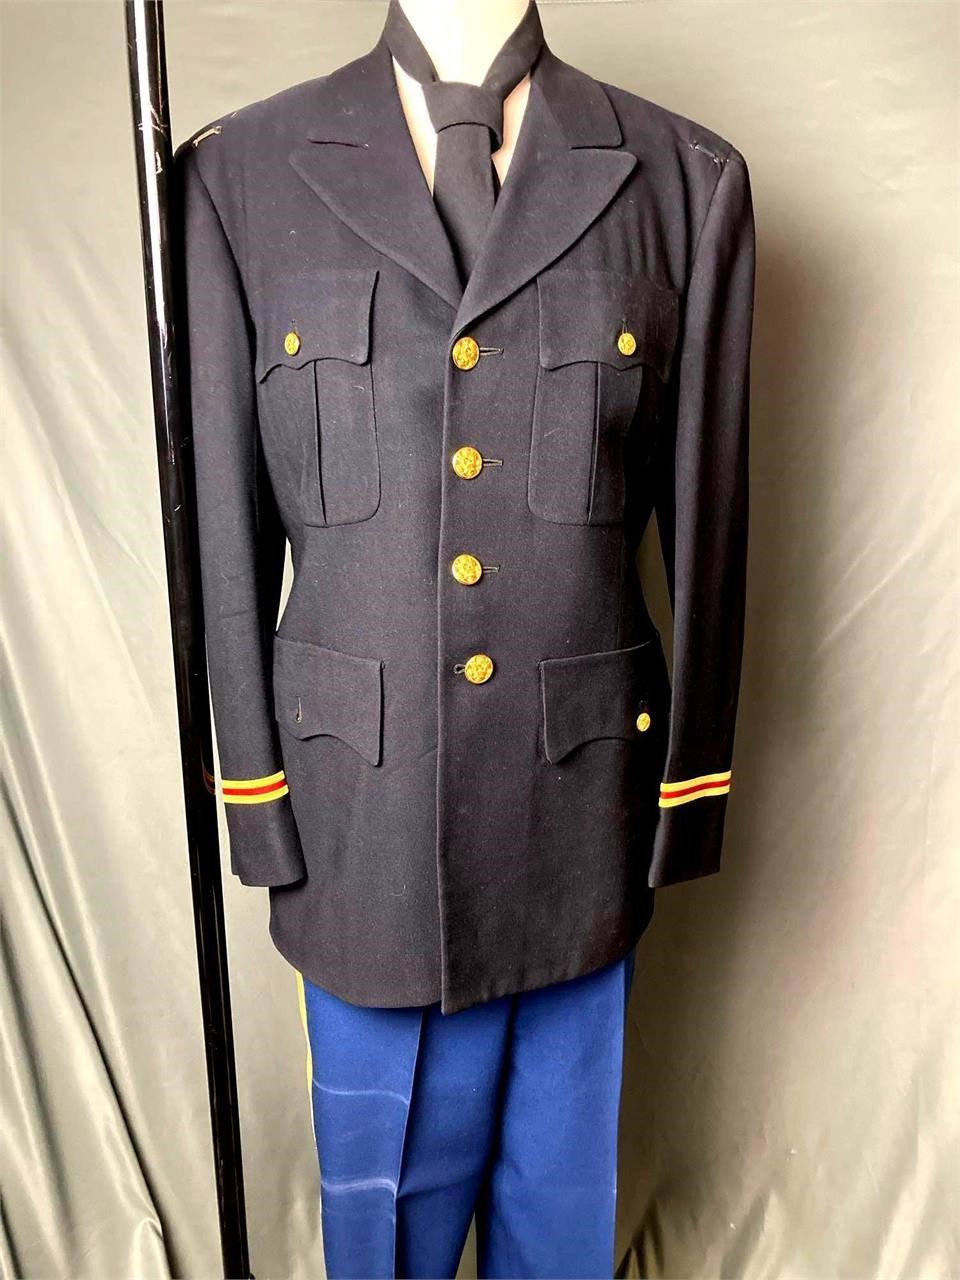 U.S. Army Formal Dress Uniform Vietnam Era